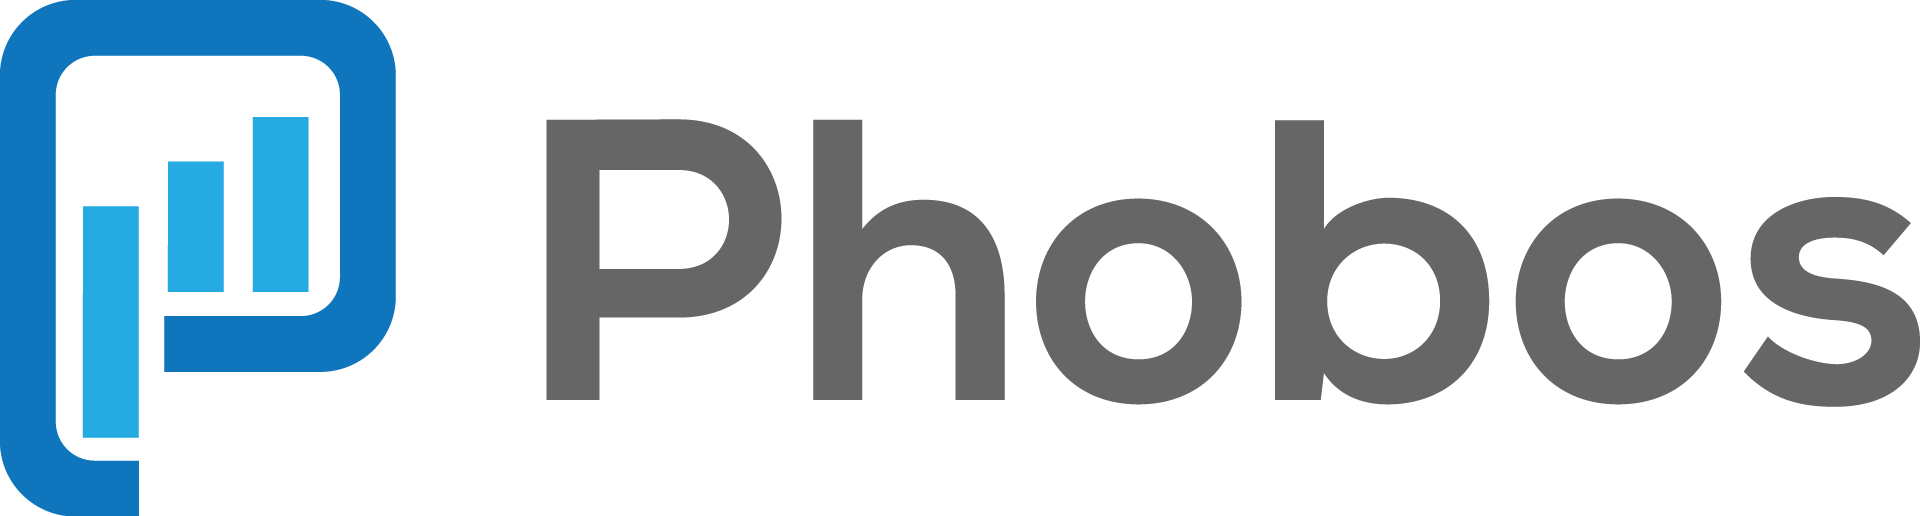 phobos_logo.png